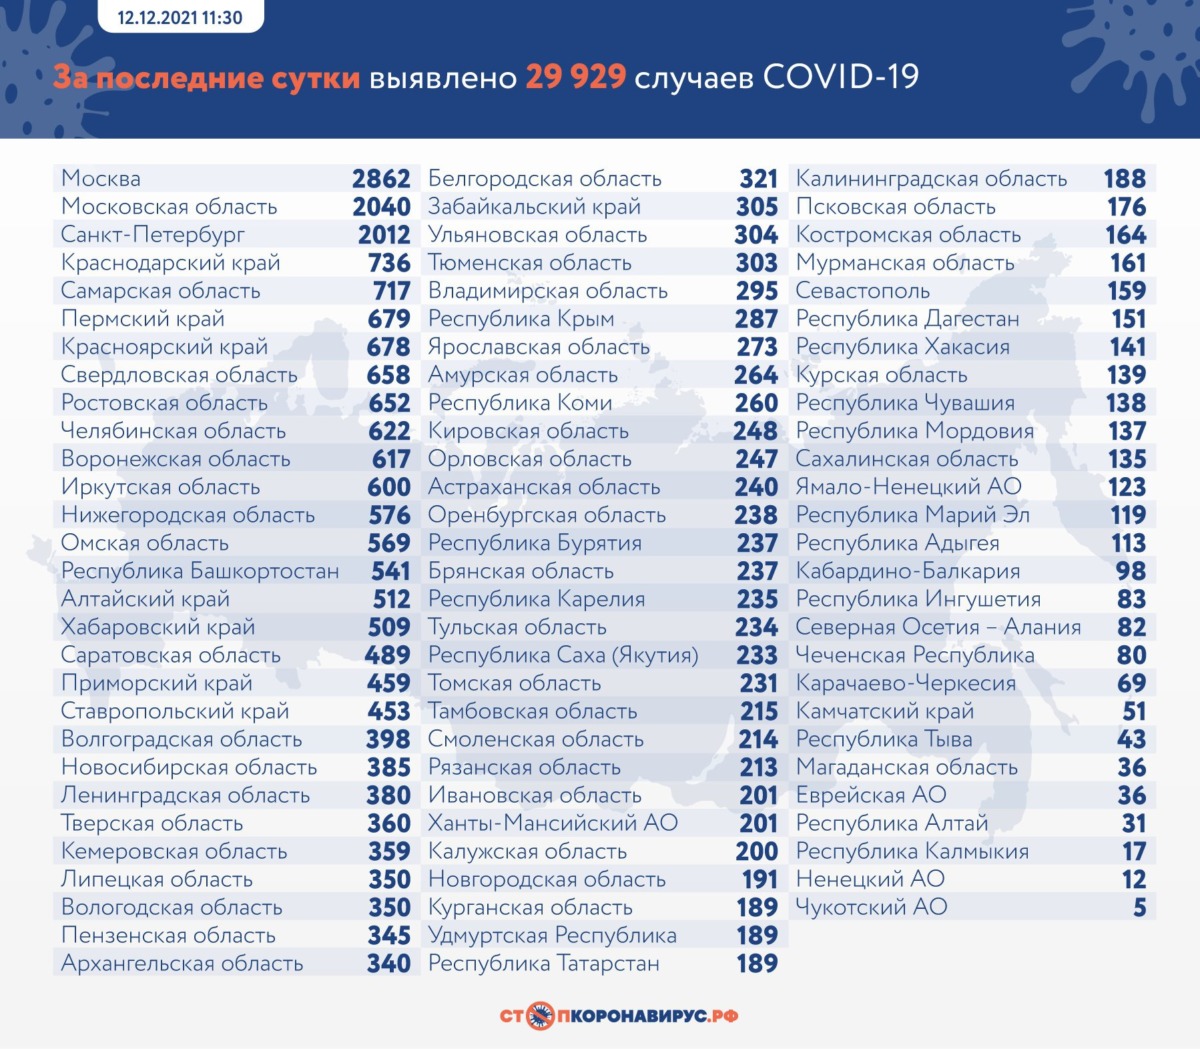 Статистика коронавируса в России на 12 декабря